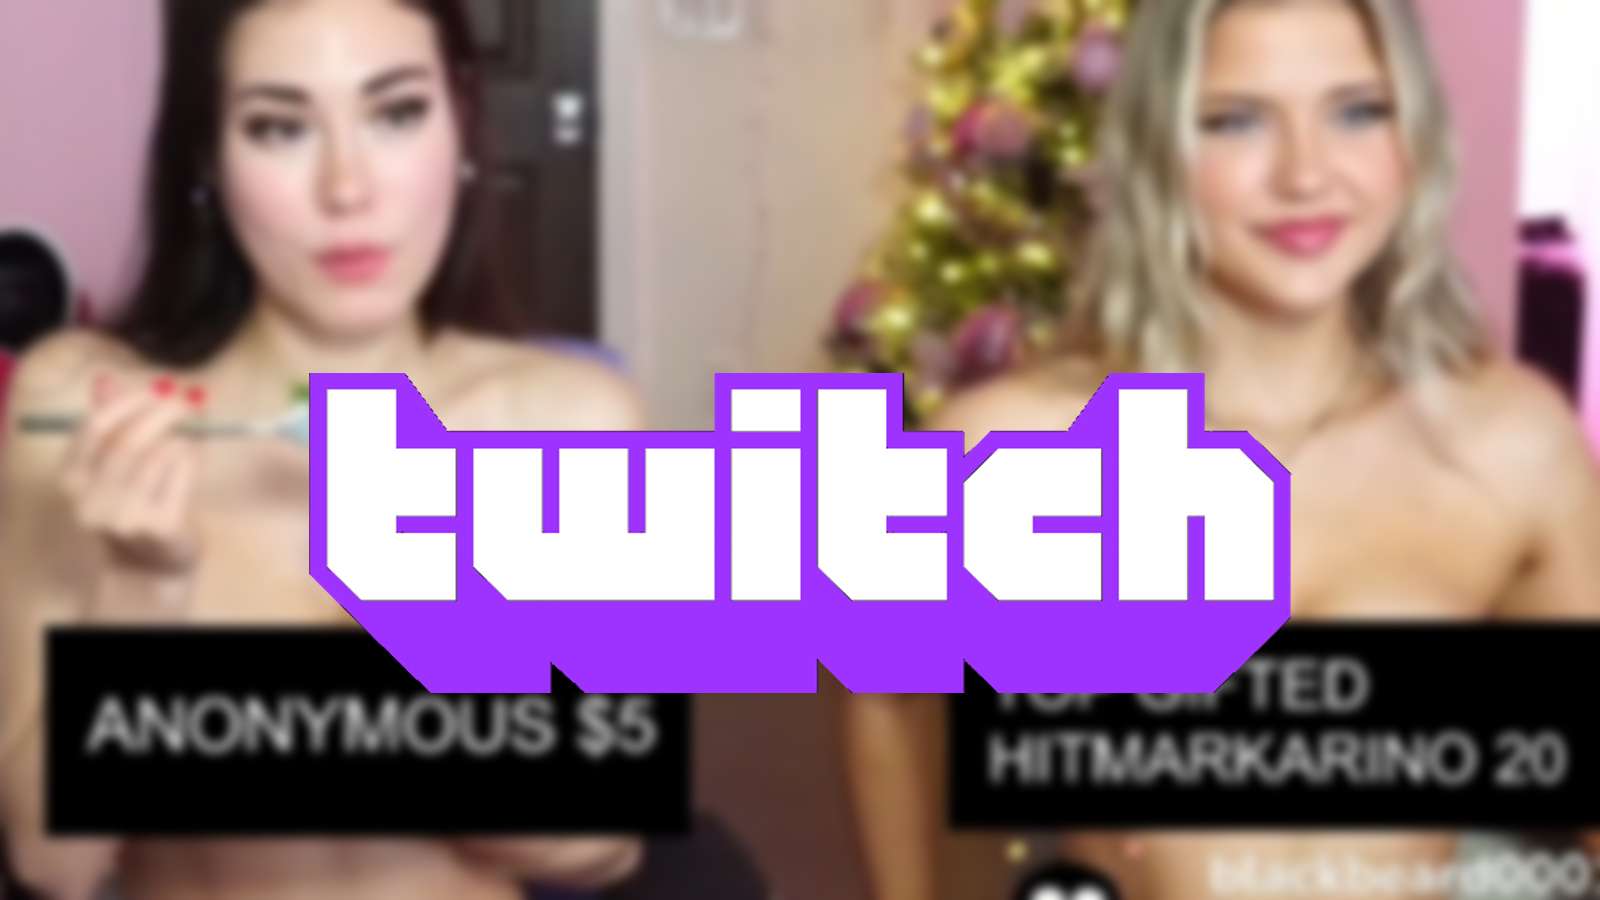 twitch streamer indiefoxx on implied nudity censor bar meta